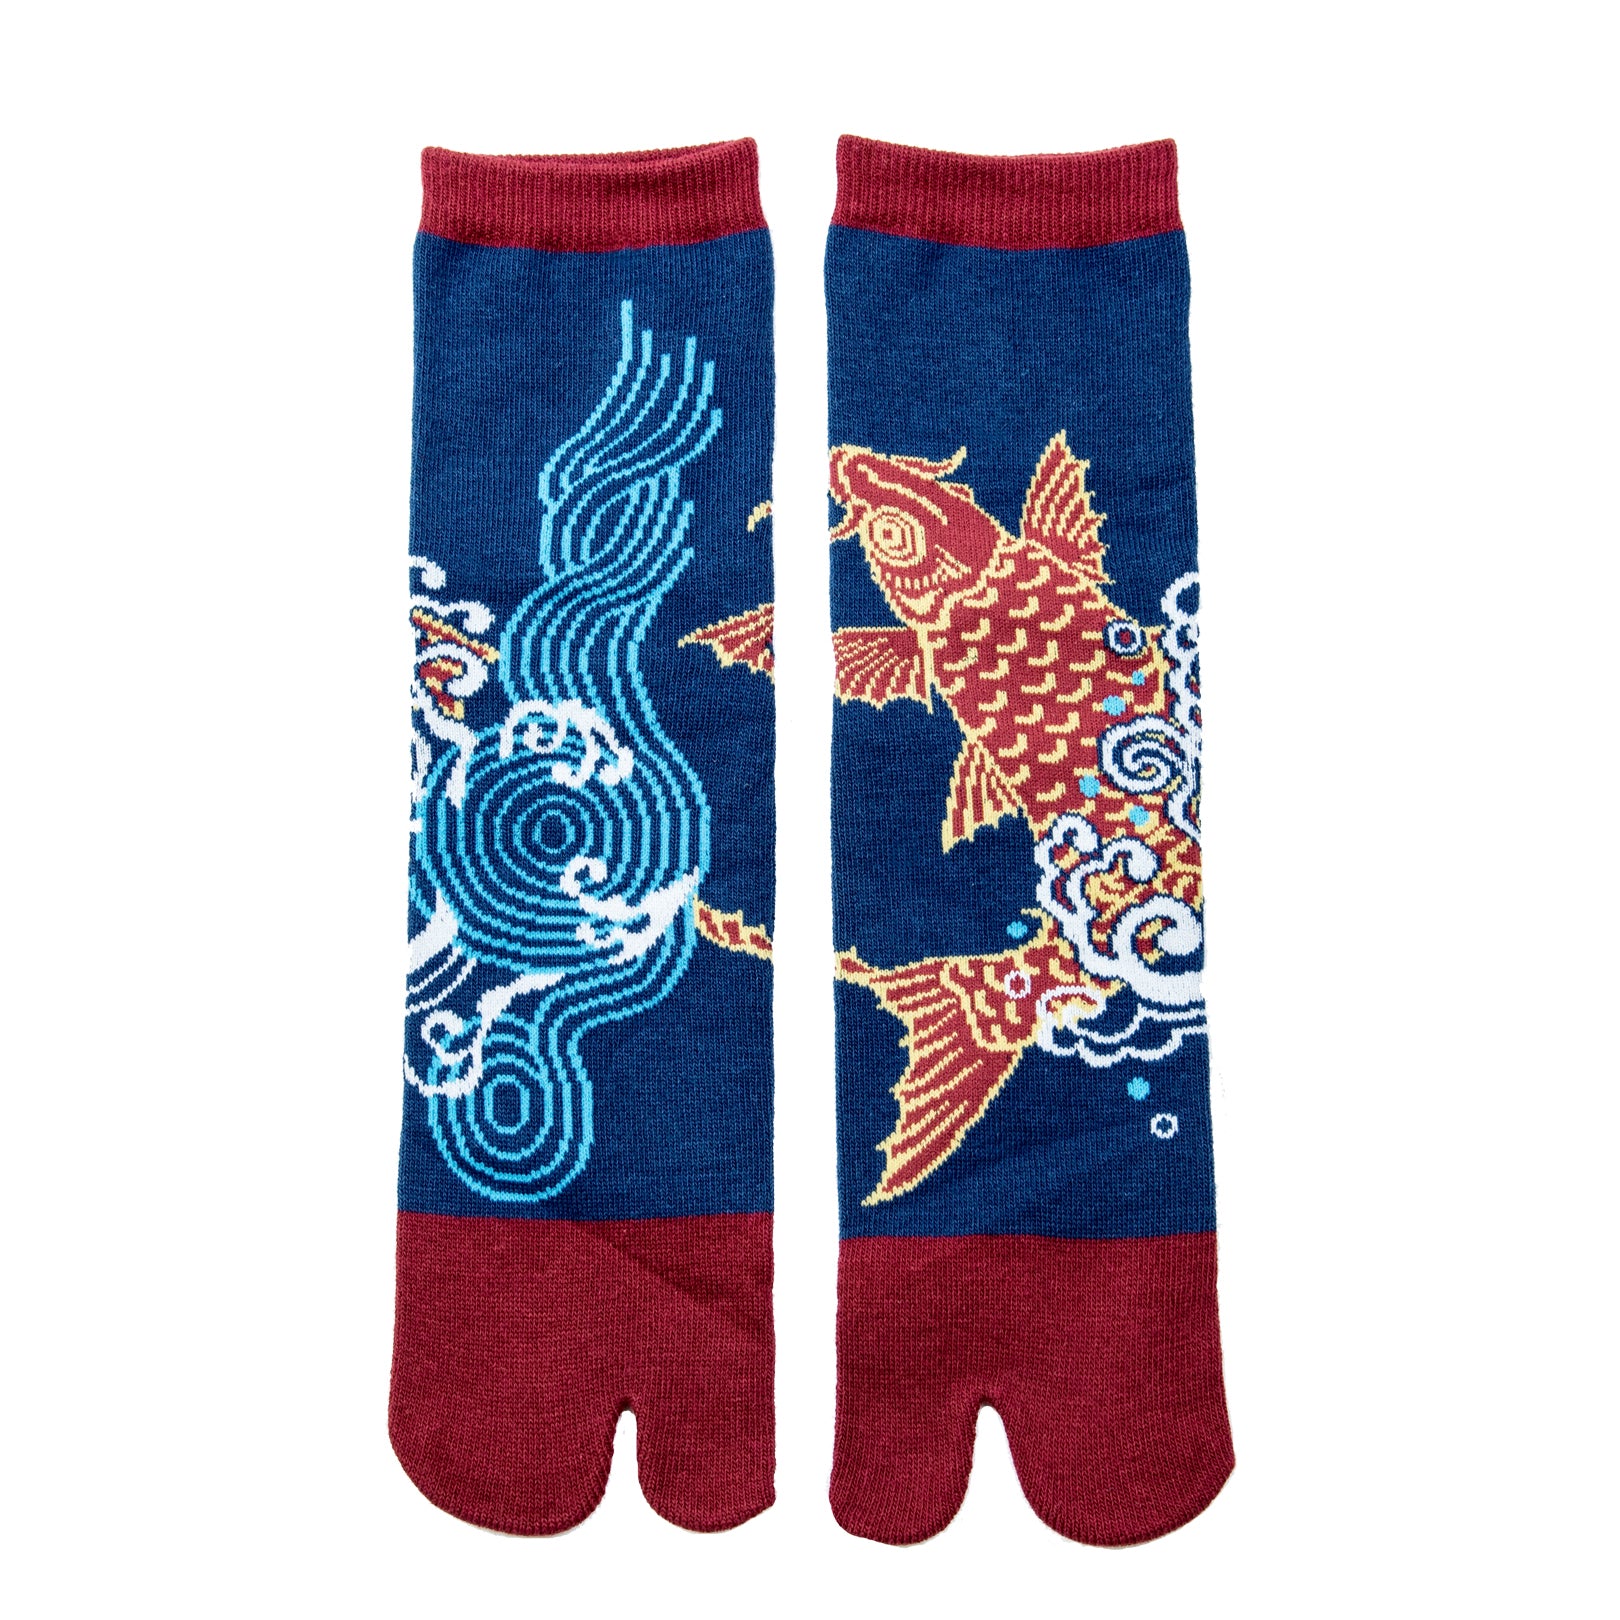 Fish Socks for Men 